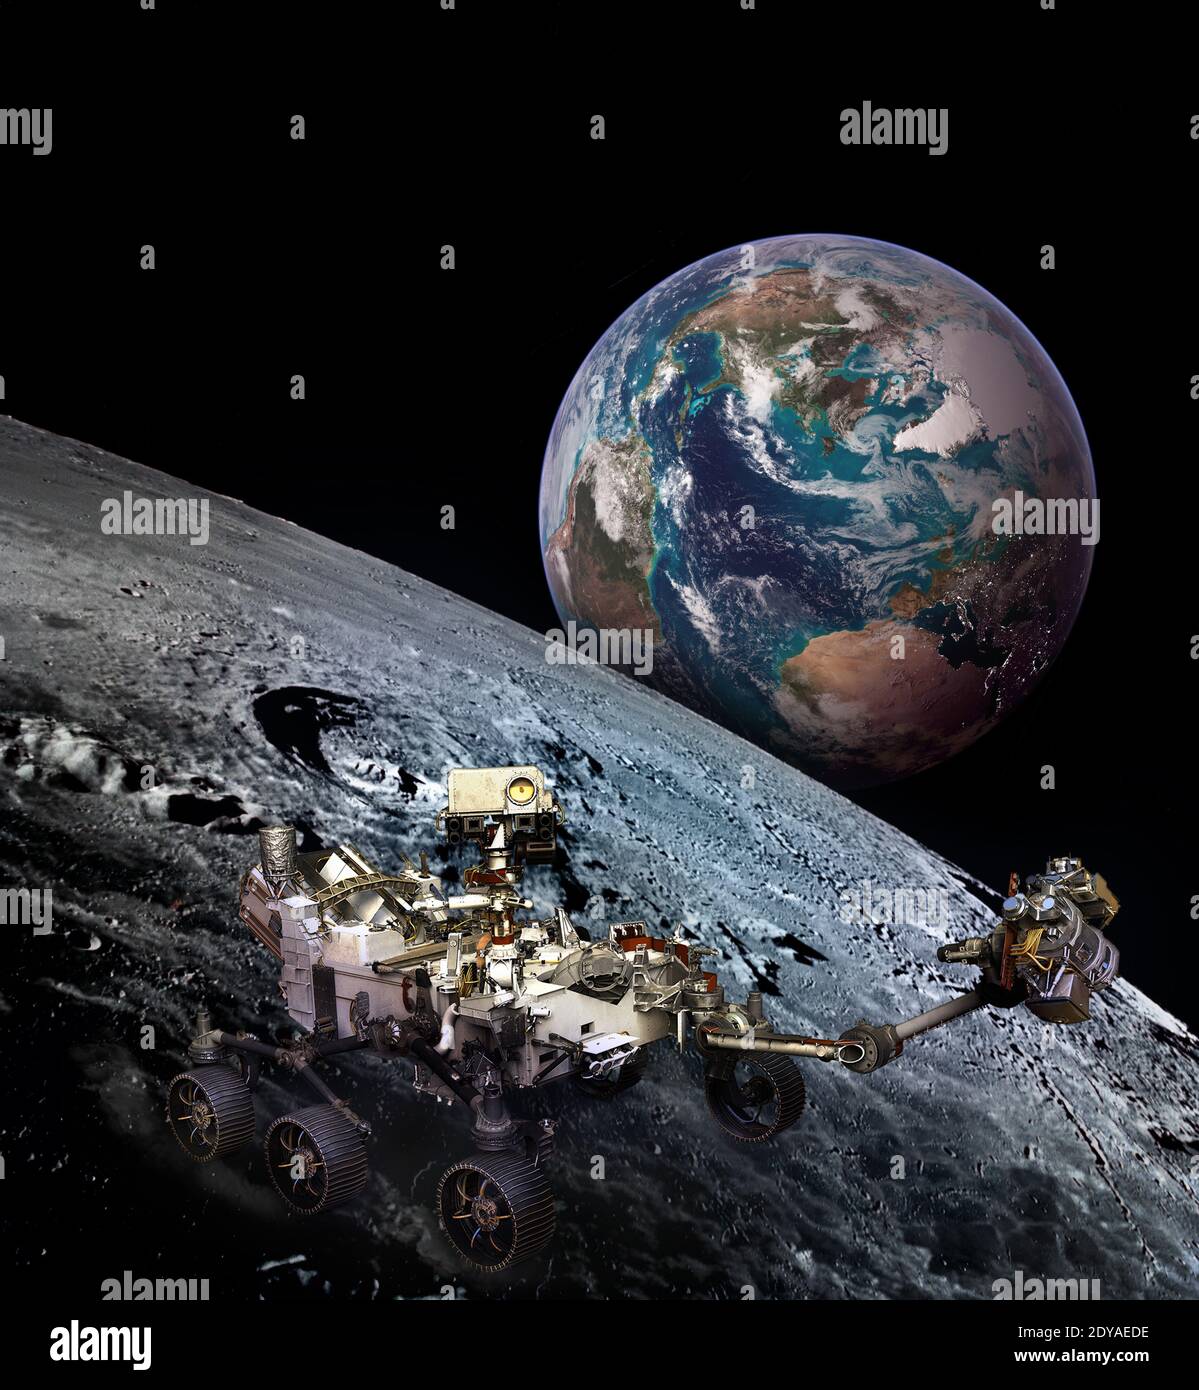 Moon rover sur la surface de la lune et la planète Terre qui s'élève. Éléments de cette image fournis par la NASA. Banque D'Images